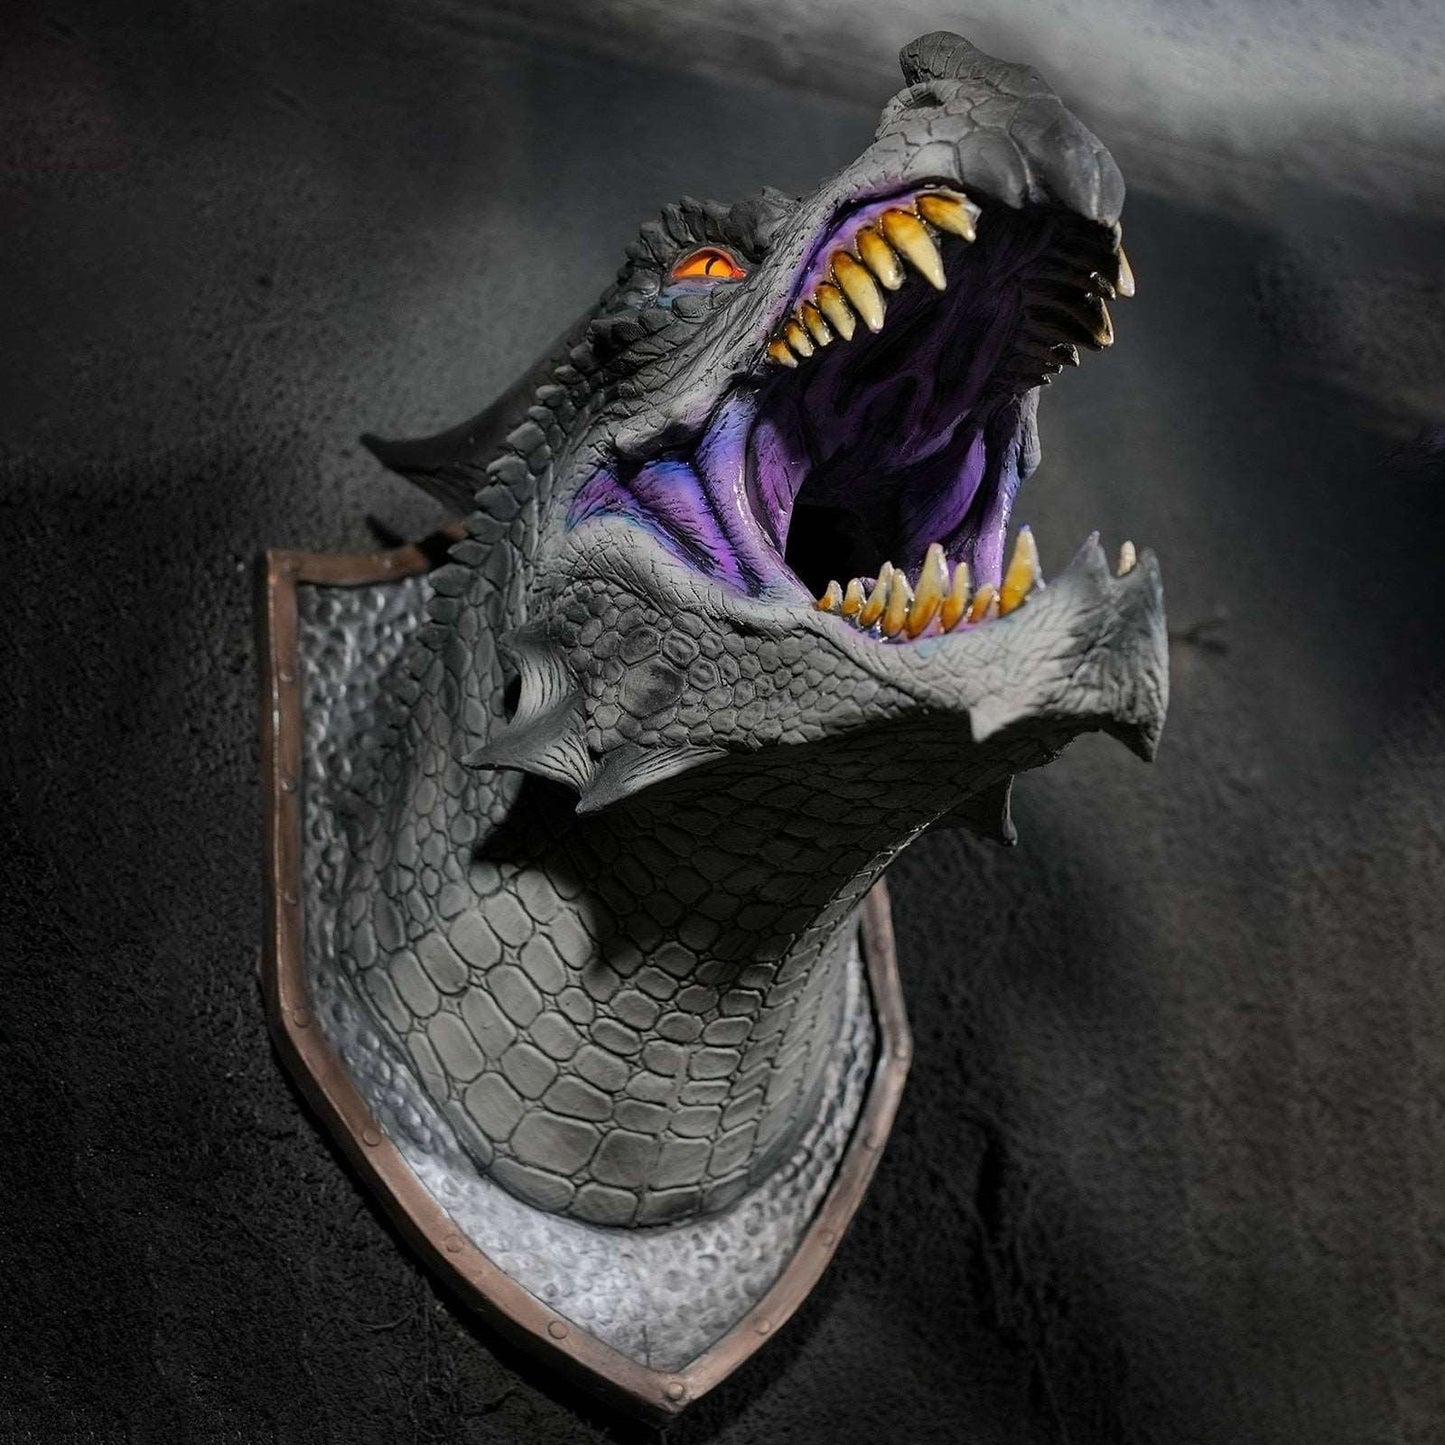 3D Wall Mounted Dragon Head Prop - Dinosaur Smoke Light Wall Art - Sculpture/Statue - Home Decor Room